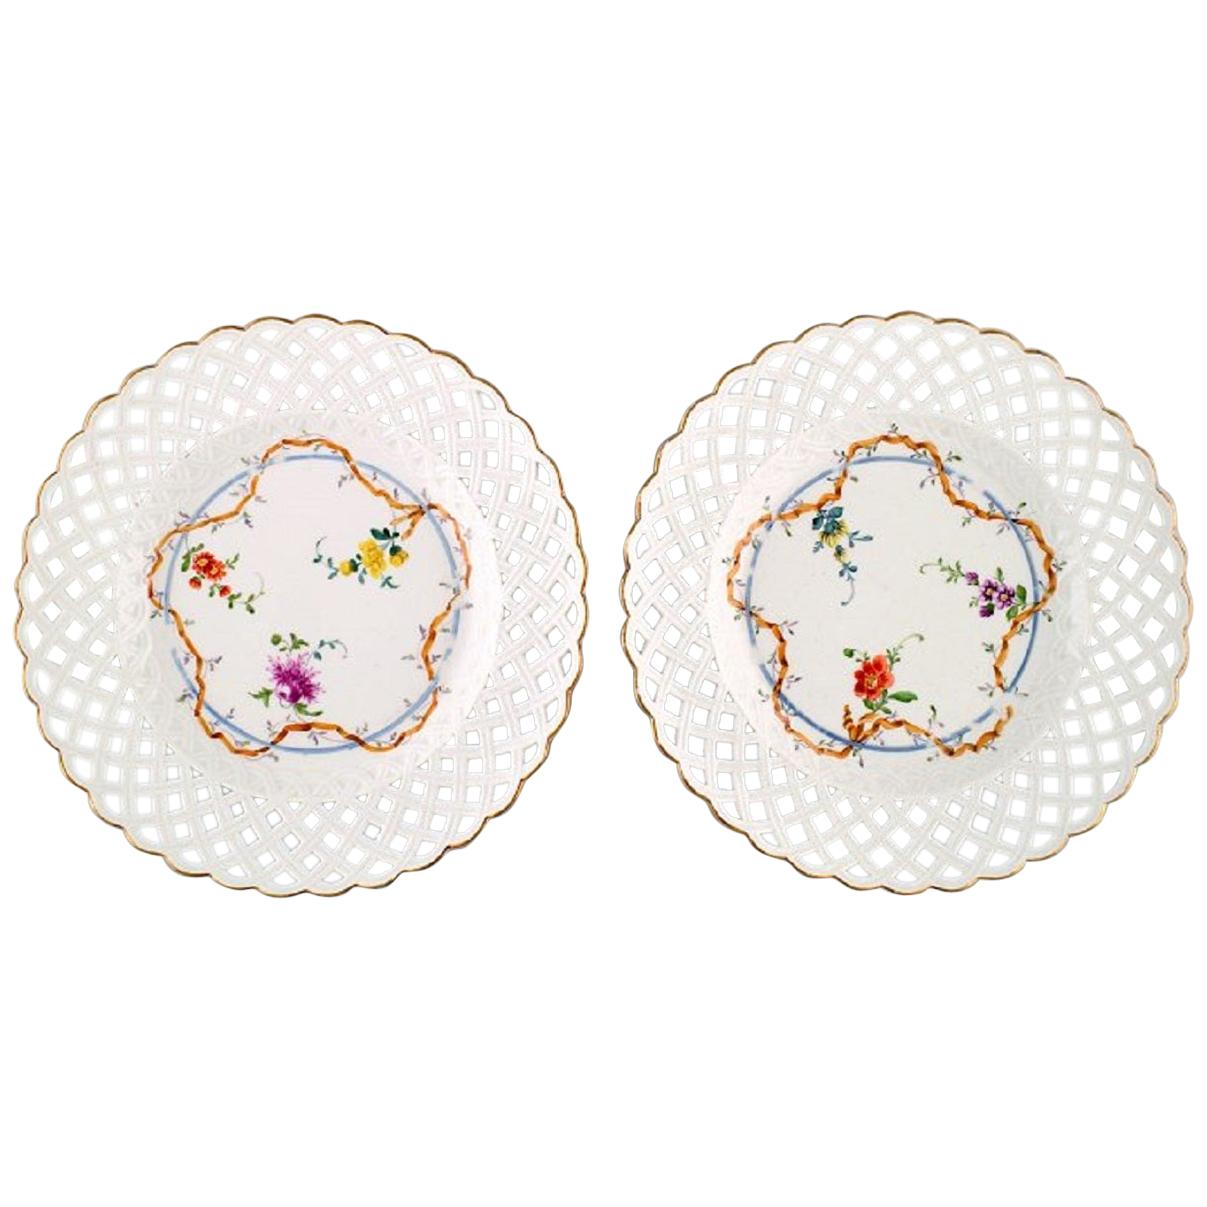 Deux assiettes Meissen antiques en porcelaine percée avec motifs floraux peints à la main